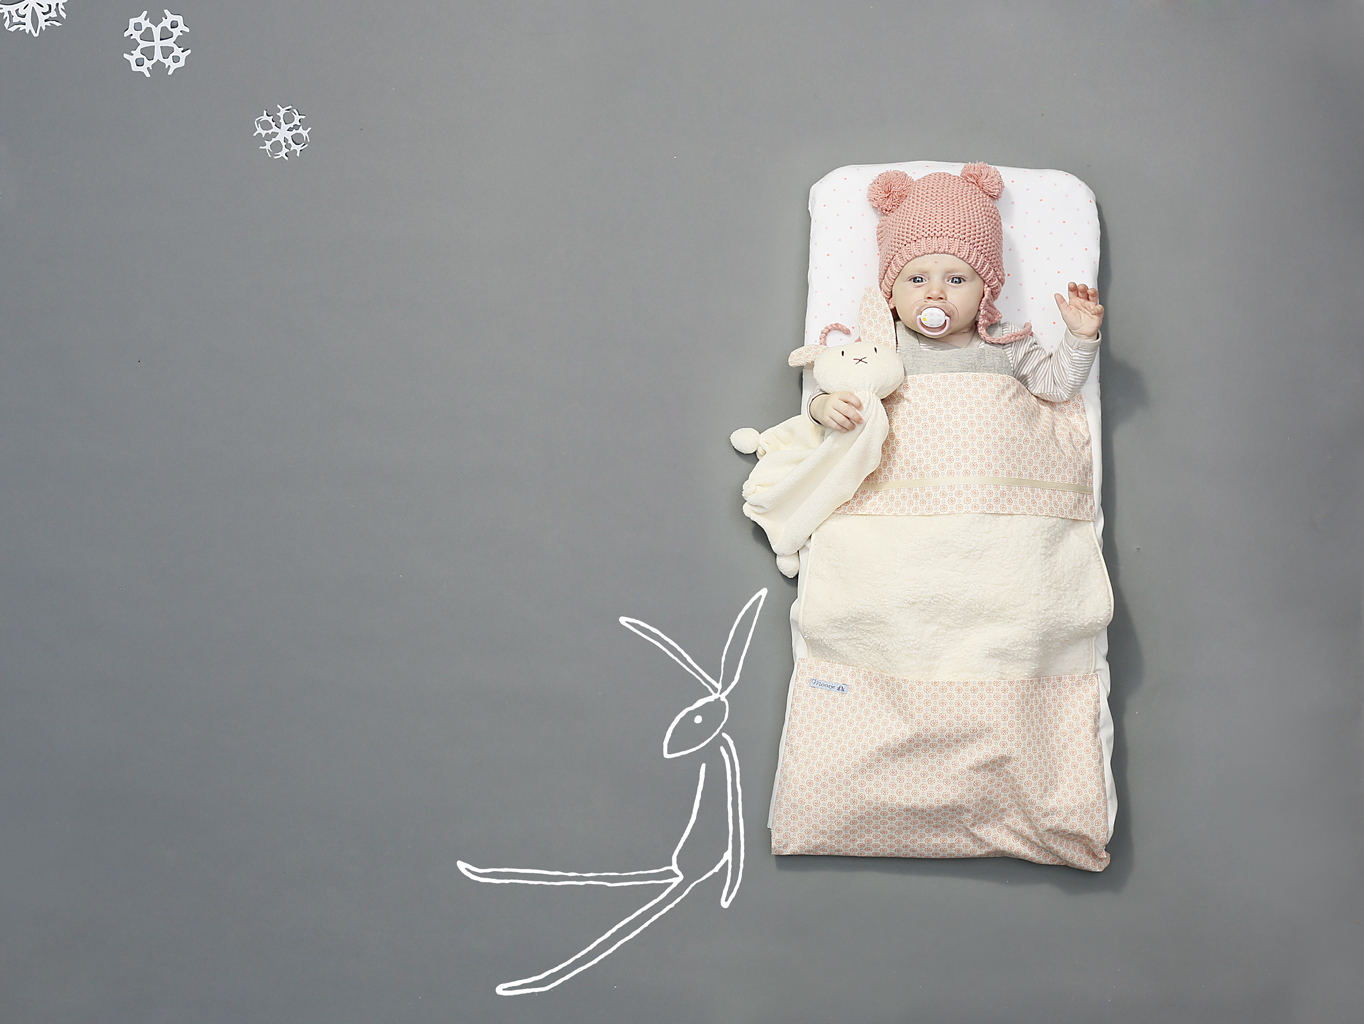 Evy+Anne sleepstyle dekentje lakentje voor kinderwagen ledikant Moosje: Unique babydekentje voor de kinderwagen